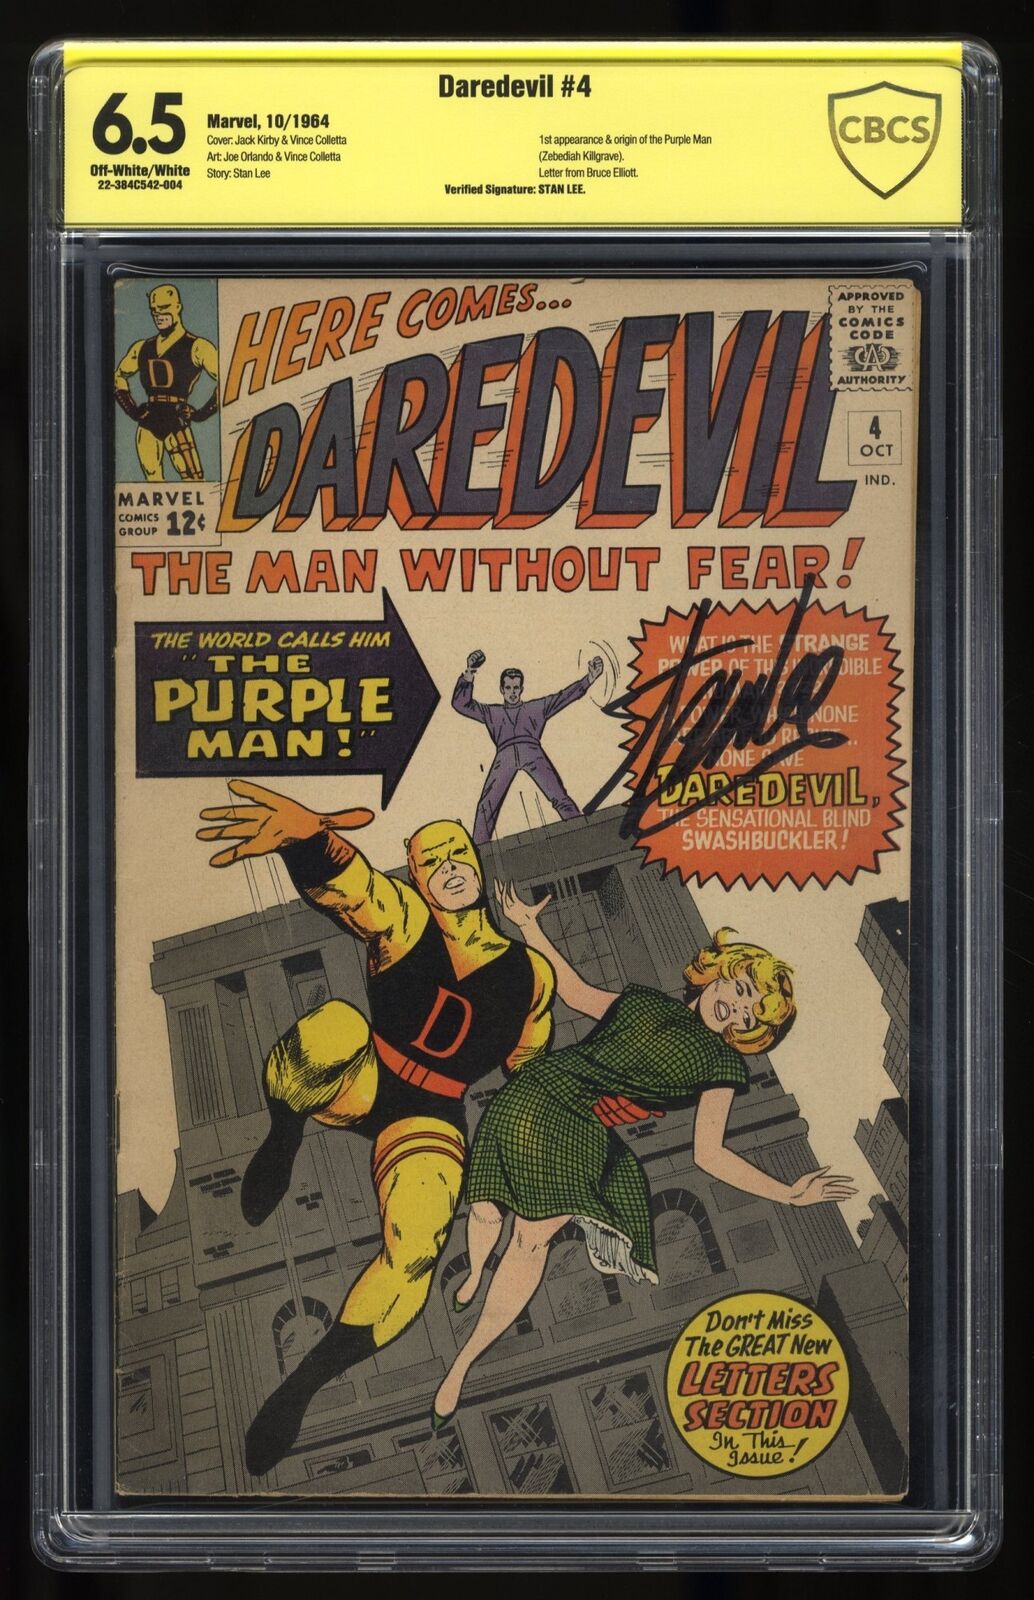 Daredevil #4 CBCS FN+ 6.5 Signed Stan Lee Marvel 1964